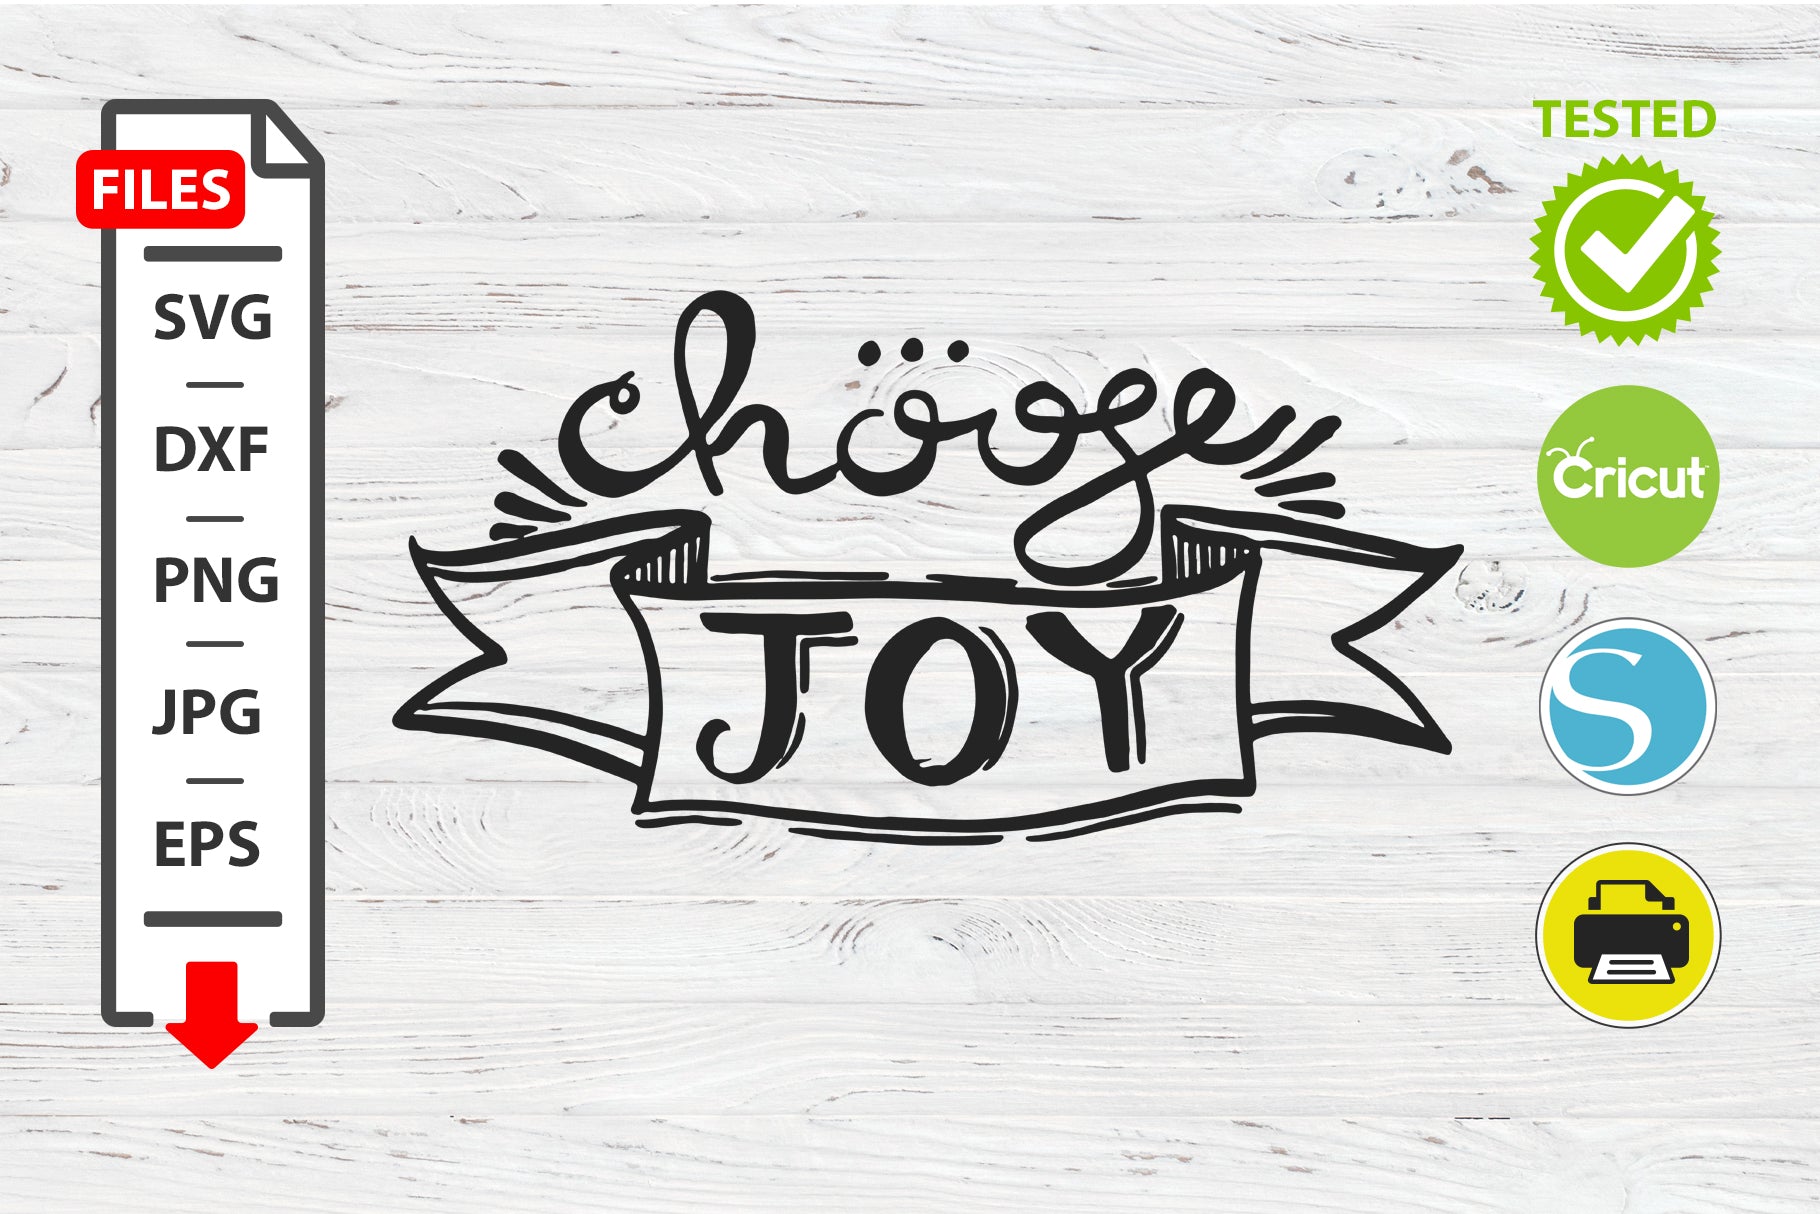 Chouse joy motivational quote SVG Cricut Silhouette design